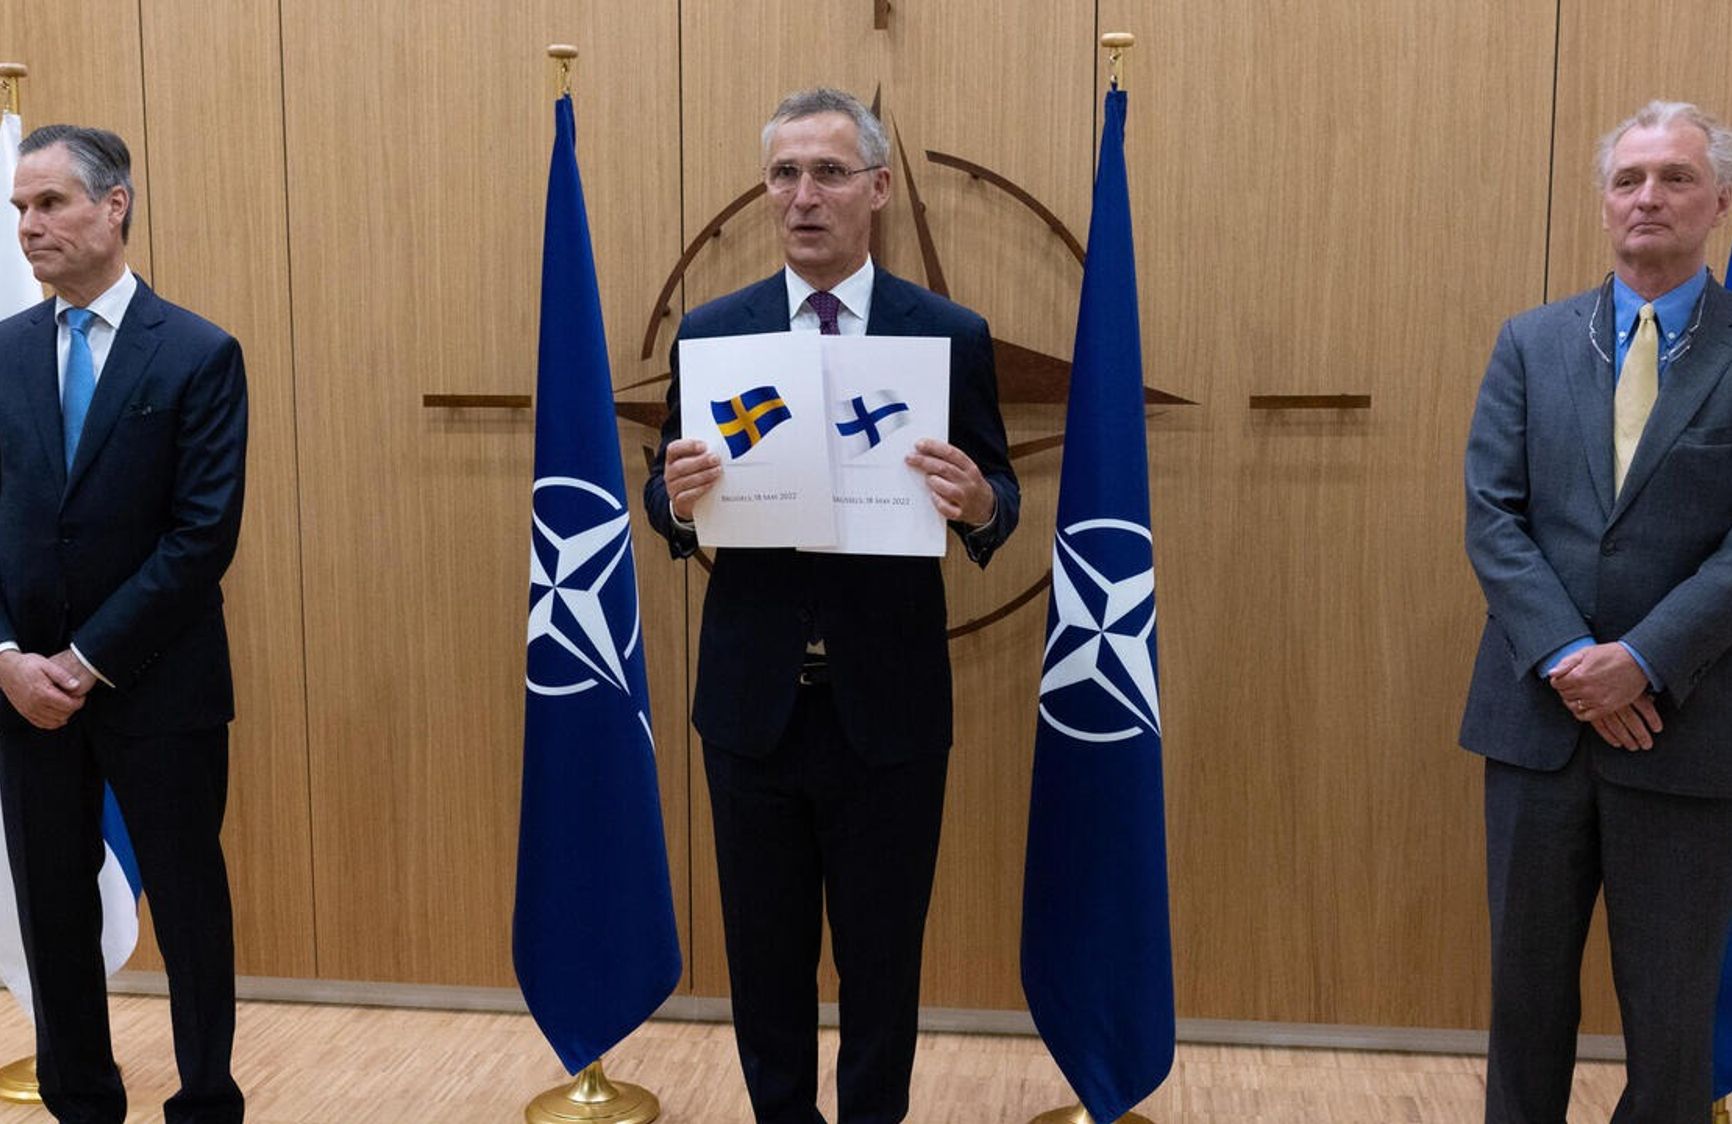 Послы Финляндии и Швеции в НАТО подали заявки на членство в НАТО генсеку Йенсу Столтенбергу